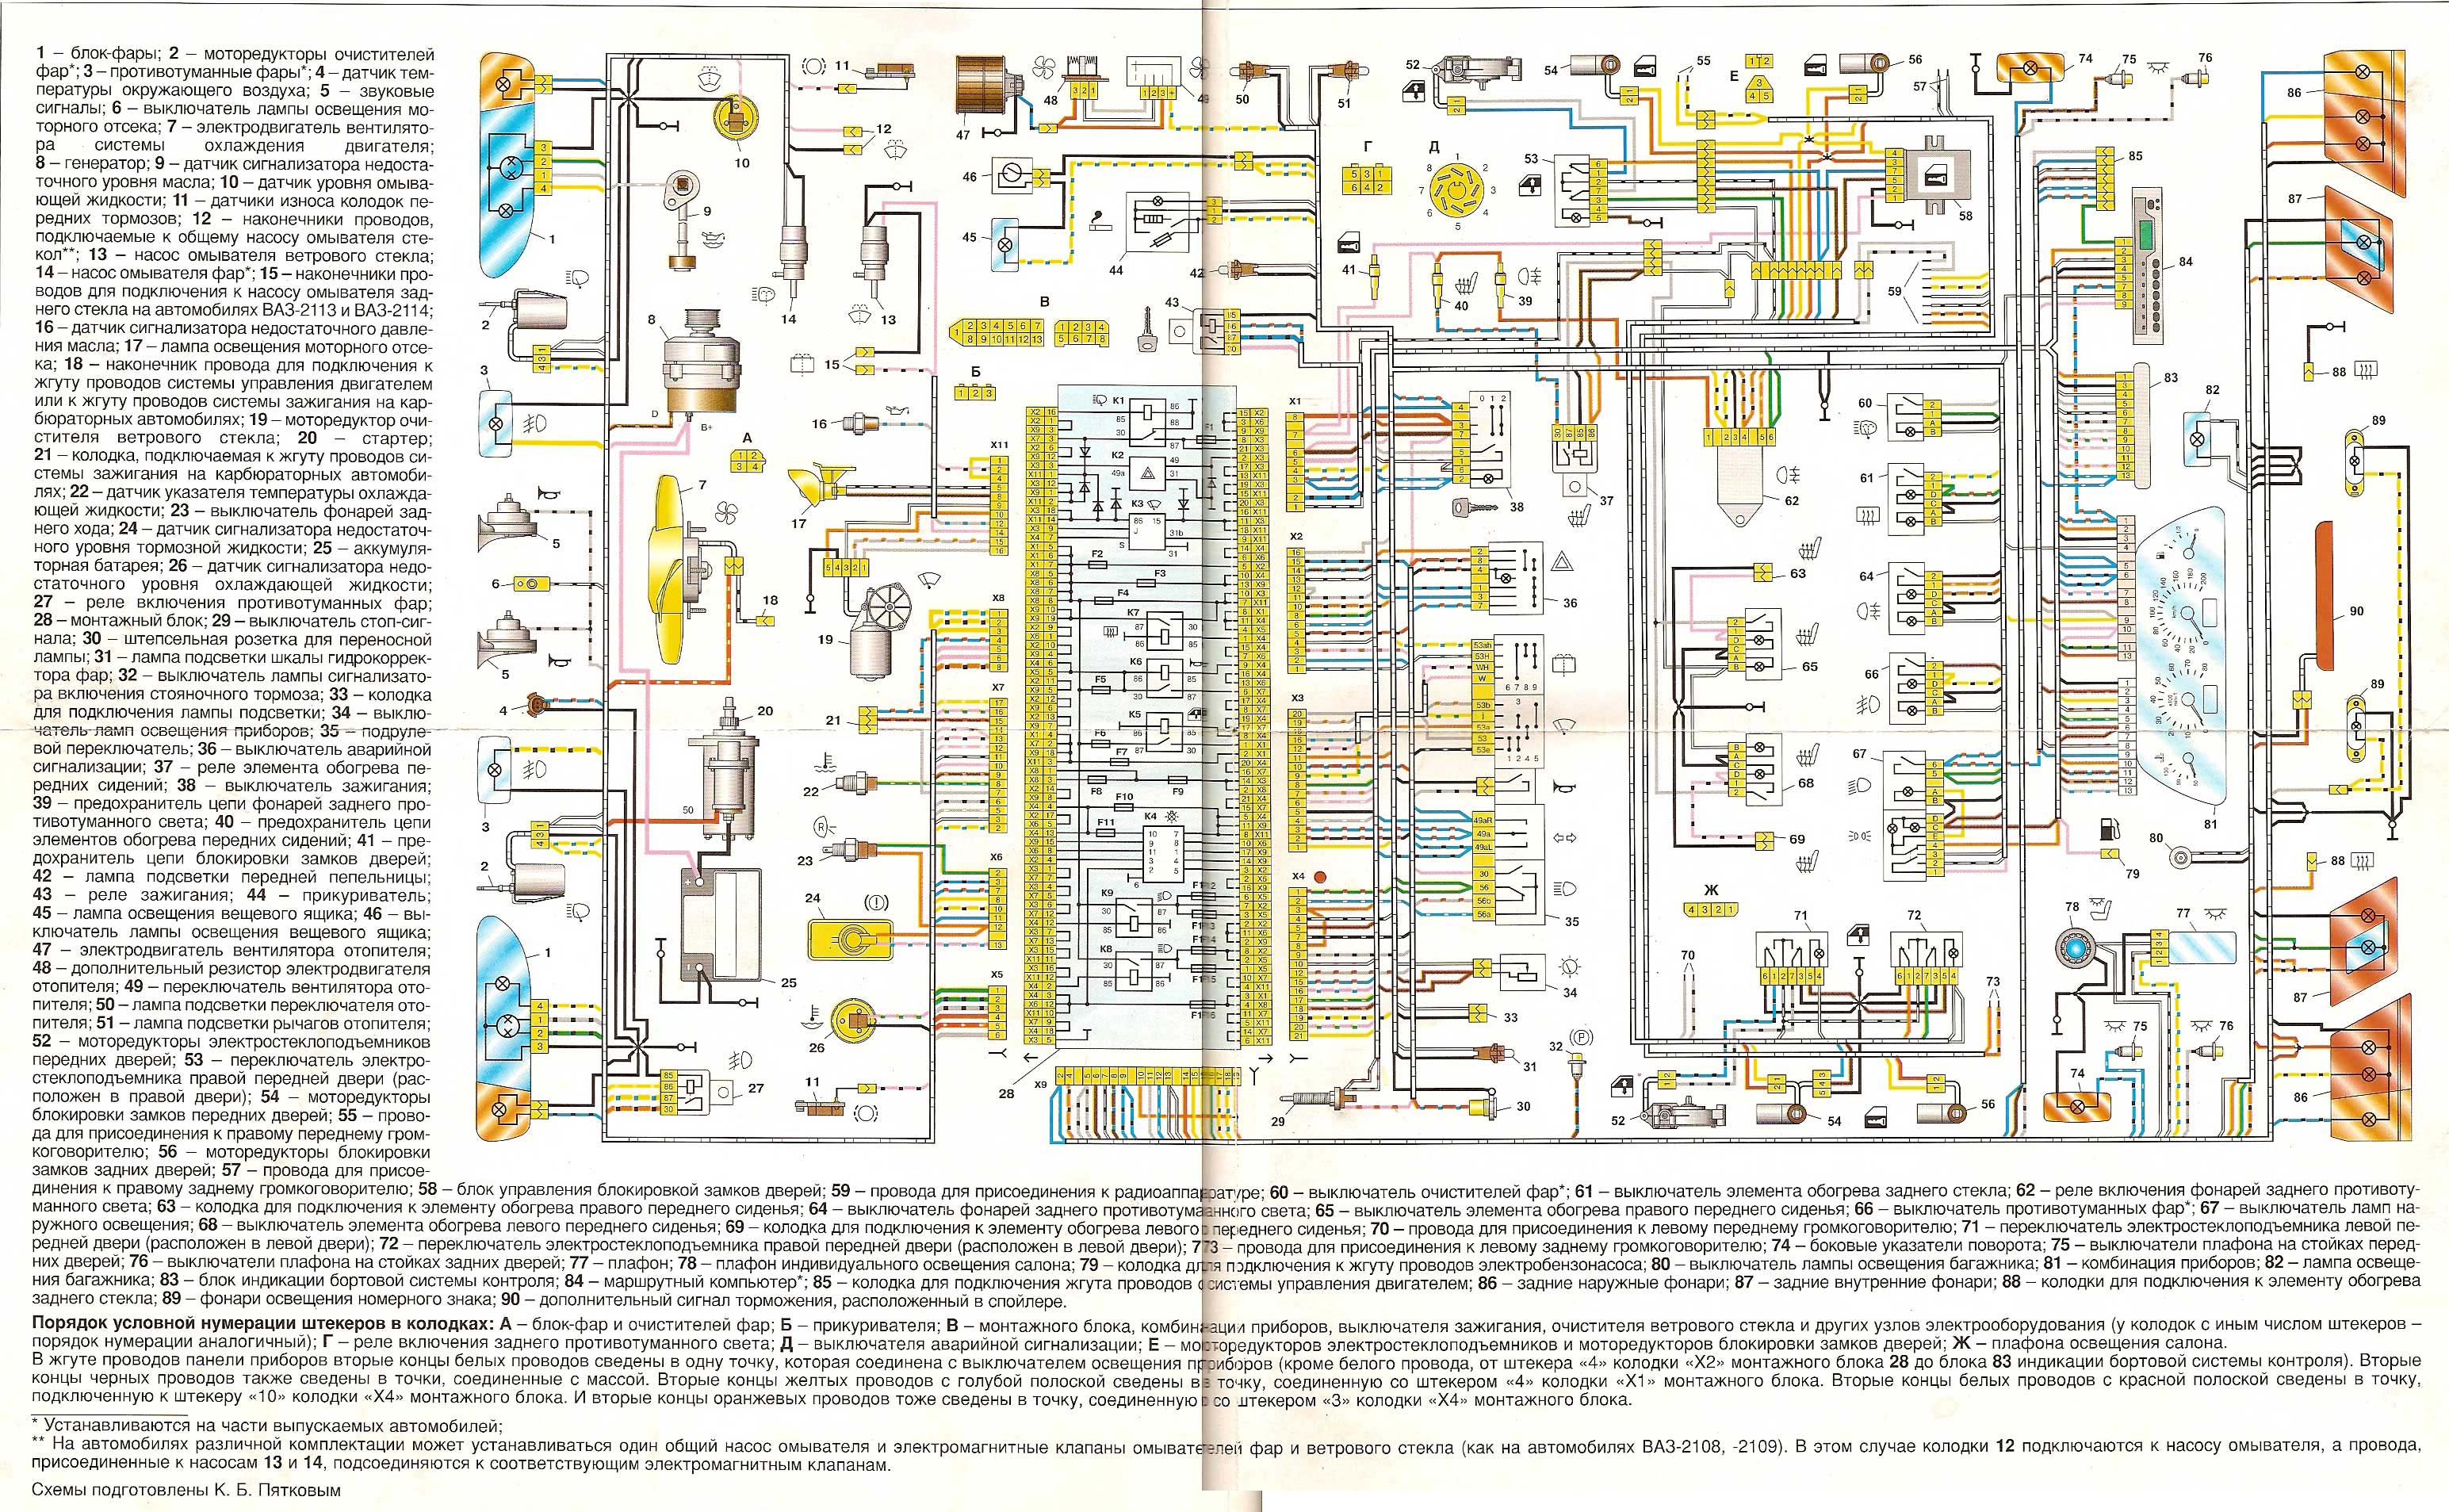 Цветные электросхемы Лада / Ваз 2108 / 2109 / 21099 с 1984 по 2004 год в формате PDF